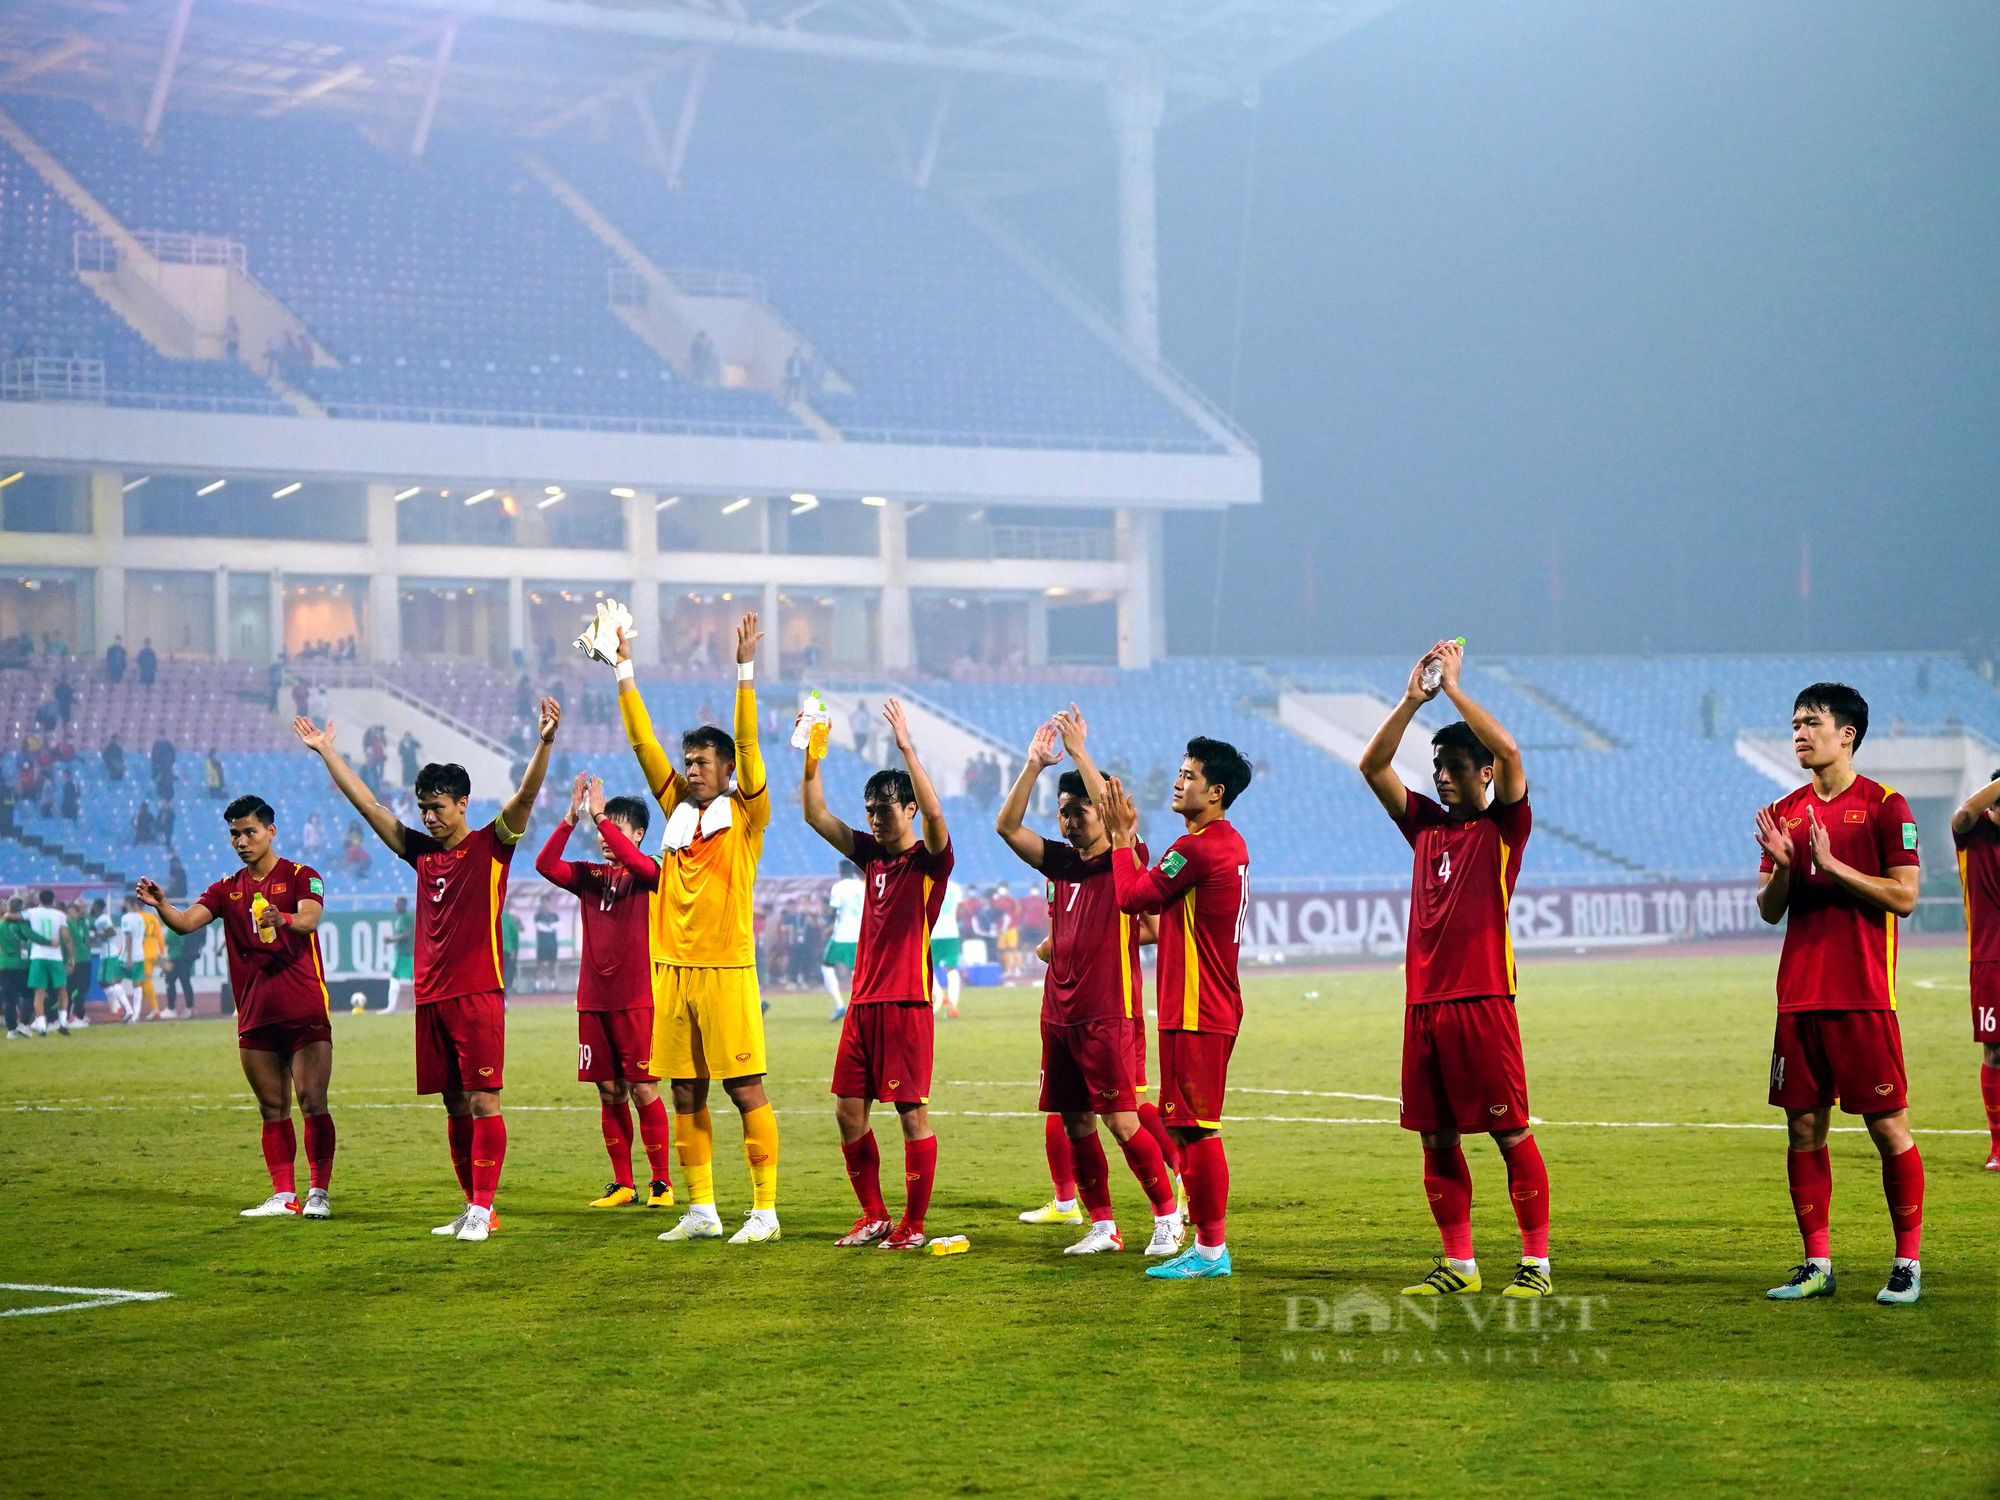 Chùm ảnh tuyển Việt Nam thi đấu lăn xả trước đội tuyển Ả Rập Xê Út - Ảnh 11.